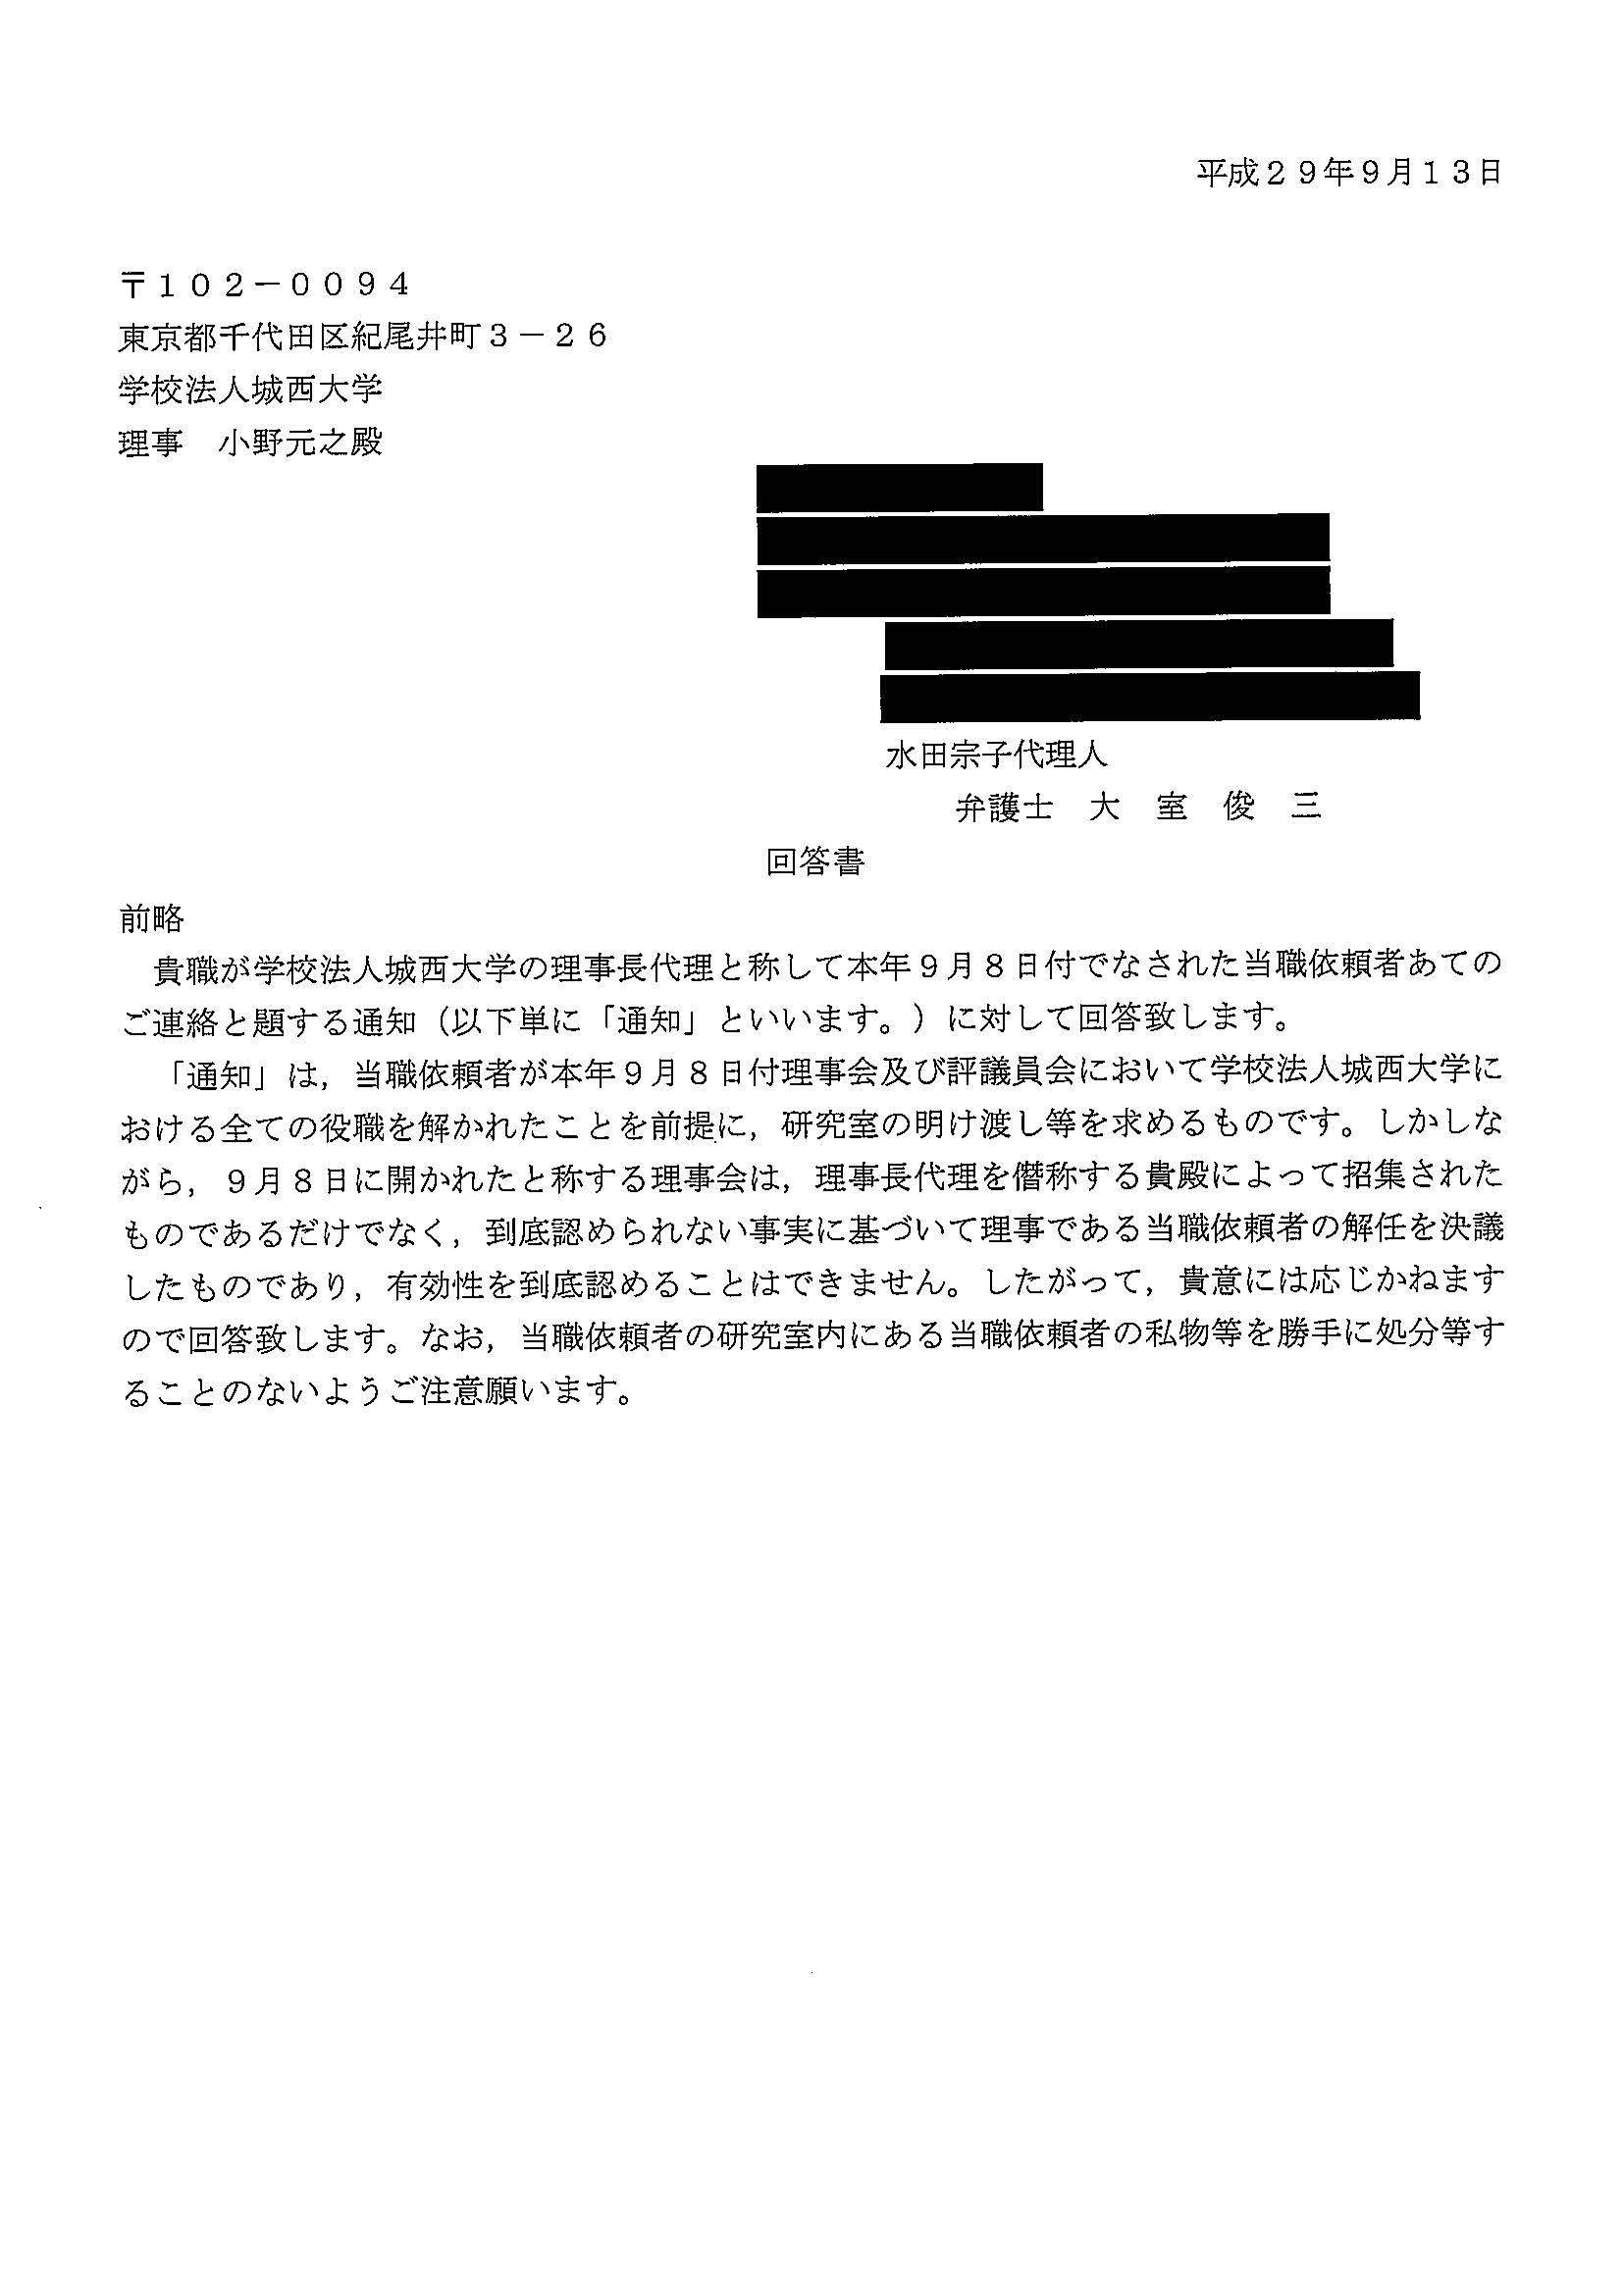 ９月８日付の研究室立ち退き通達に対する水田宗子さんの顧問弁護士からの回答